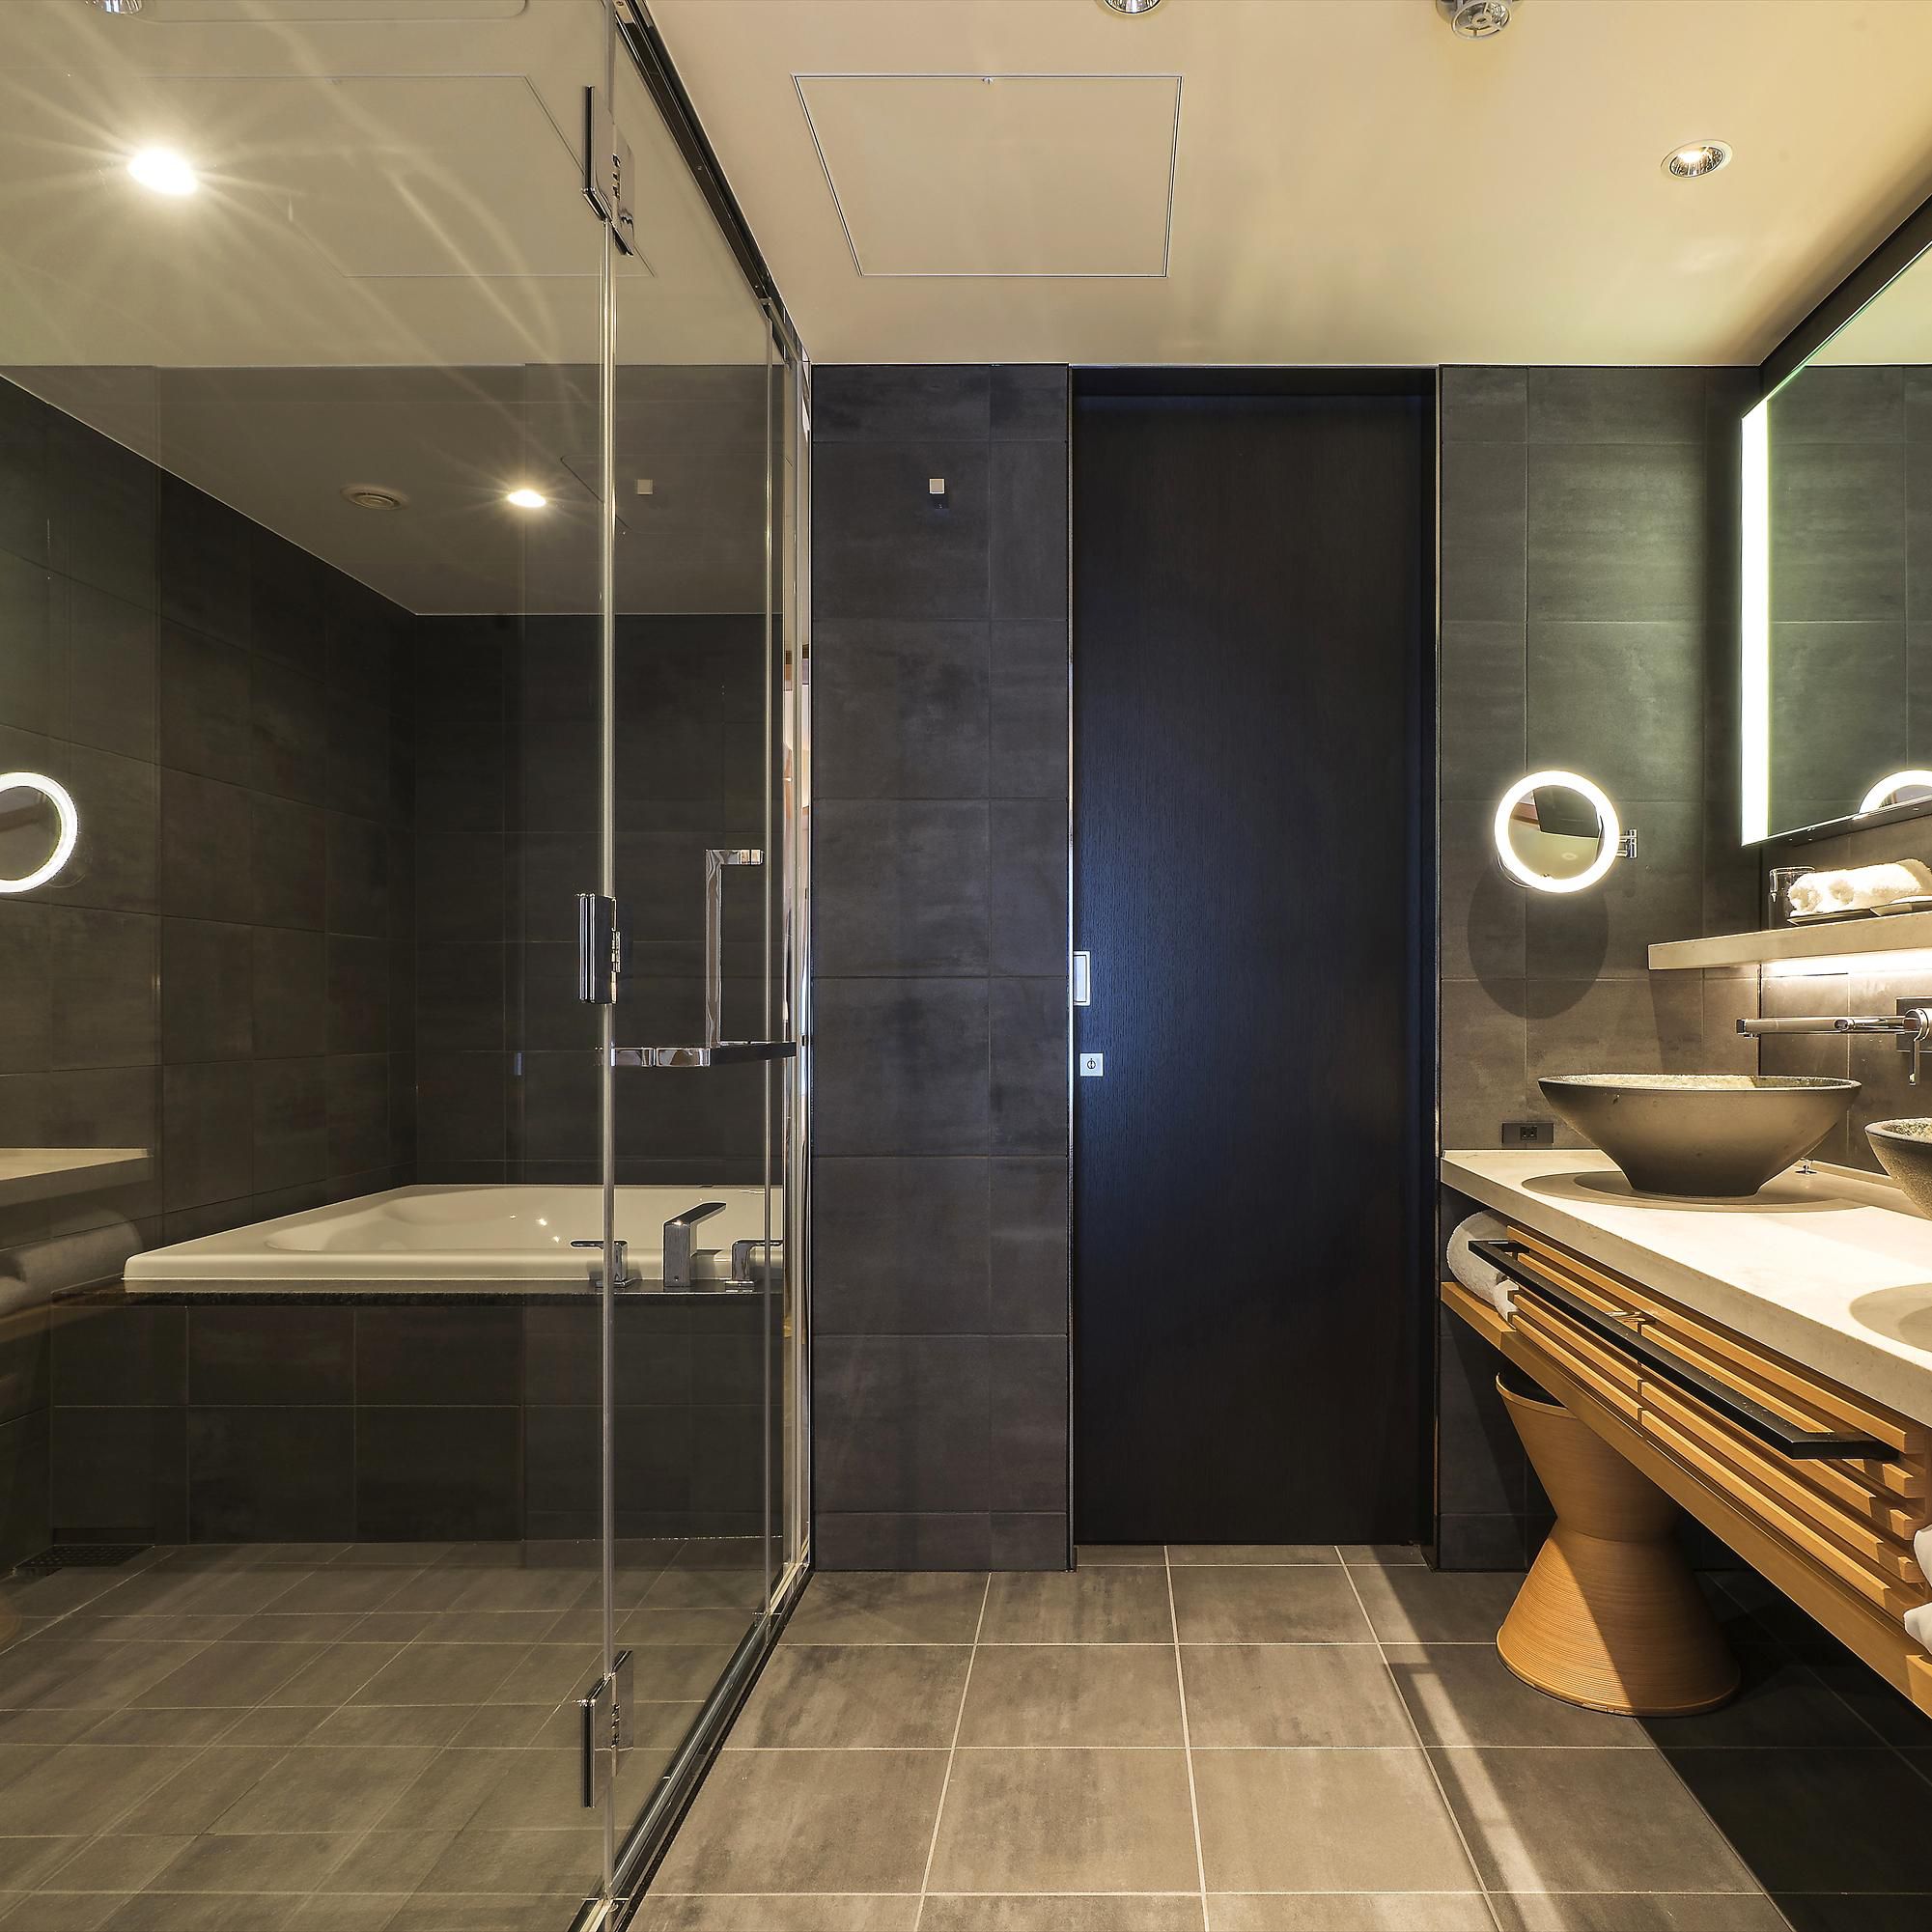 【Upper Floor】Premium Castle View Twin Room Bath Room